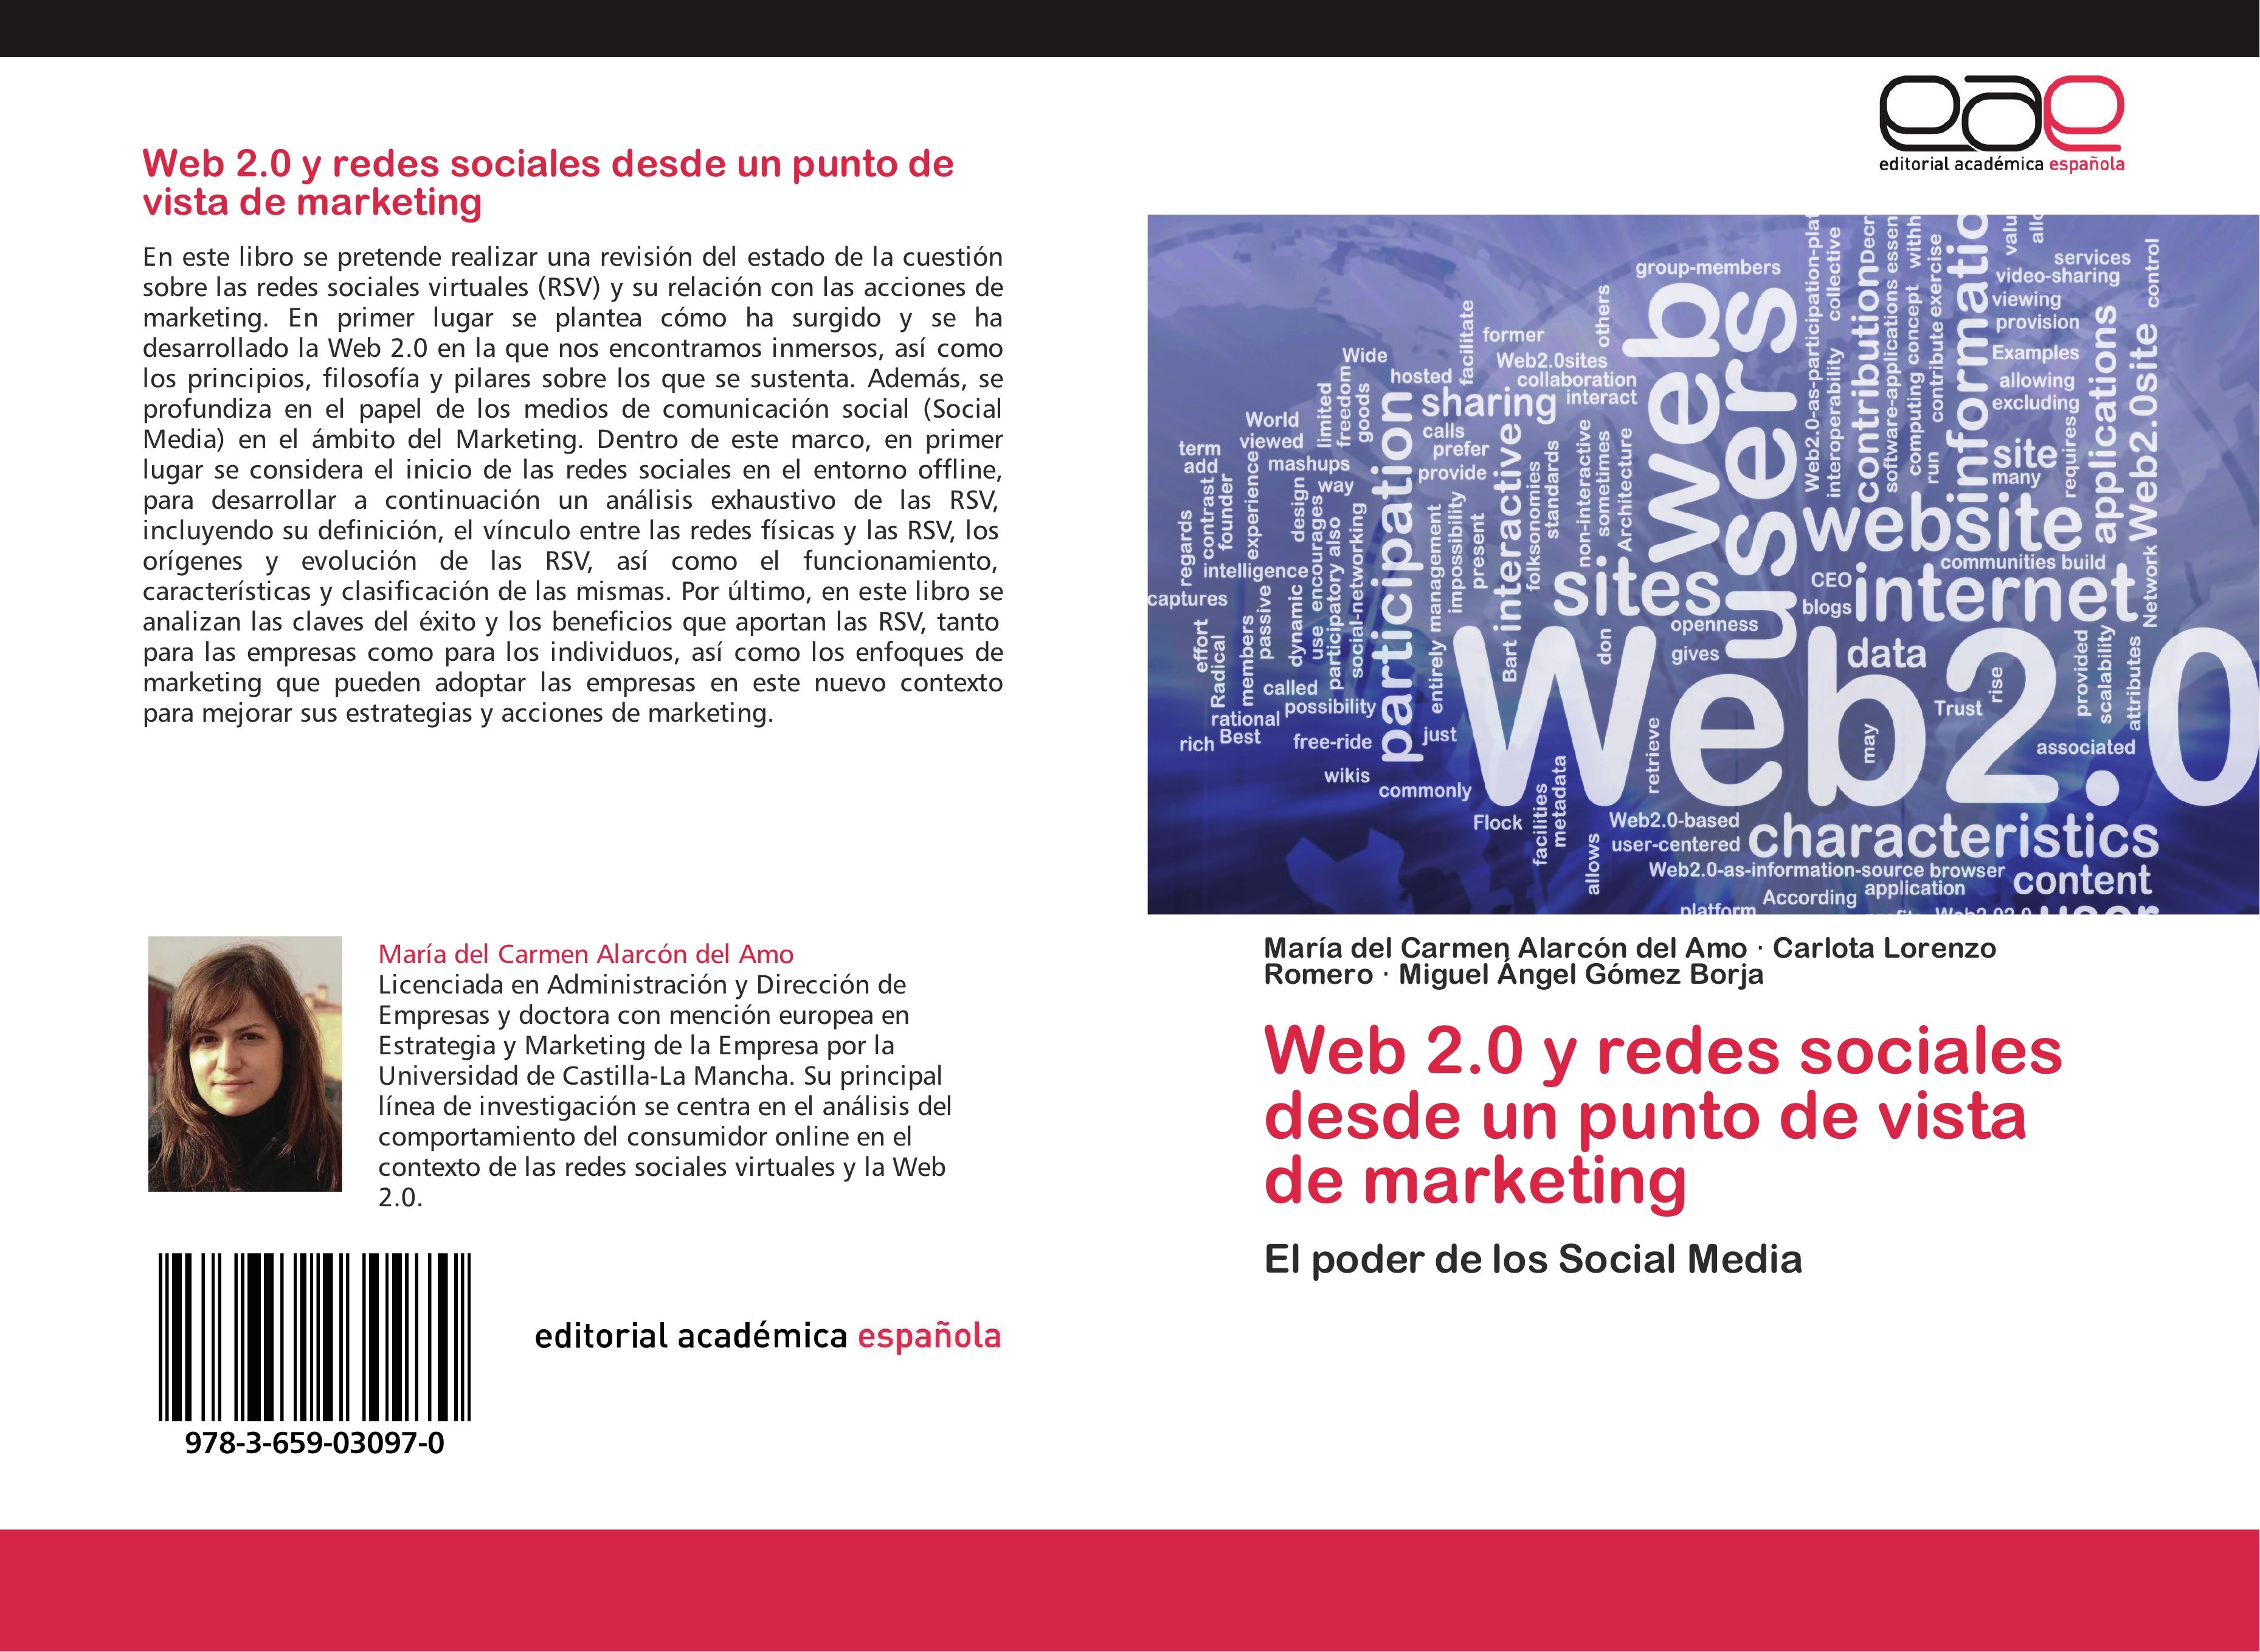 Web 2.0 y redes sociales desde un punto de vista de marketing - María del Carmen Alarcón del Amo Carlota Lorenzo Romero Miguel Ángel Gómez Borja